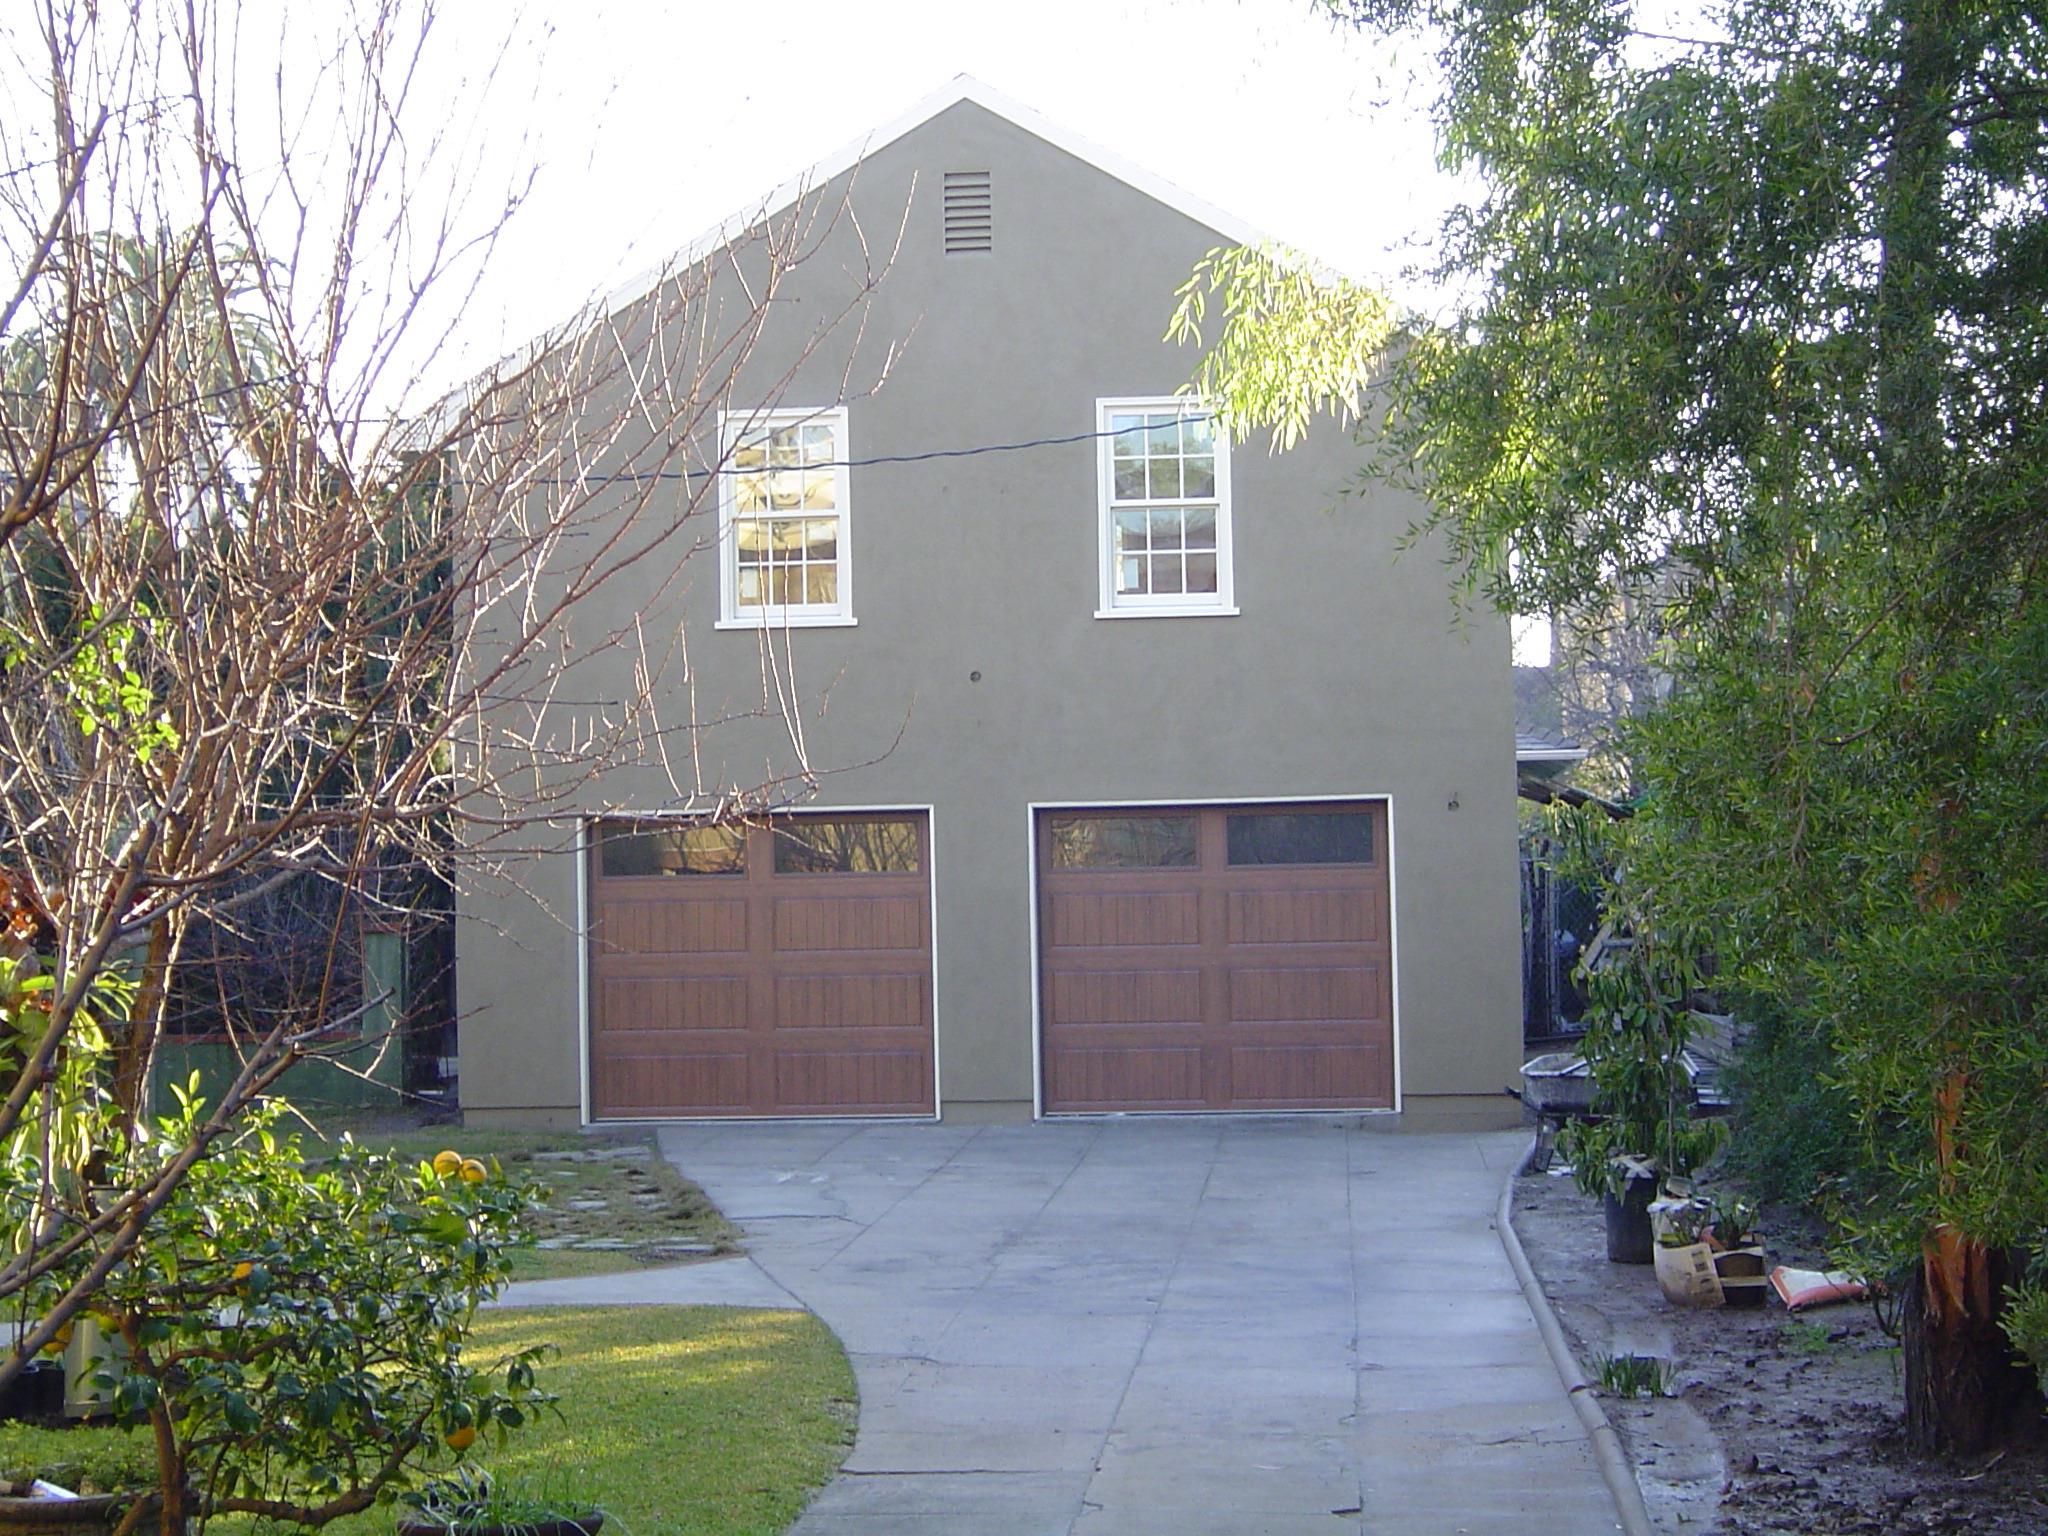 Hanover garage 24x24 with garage door  in Los Angeles,California.ID number 99398-1.